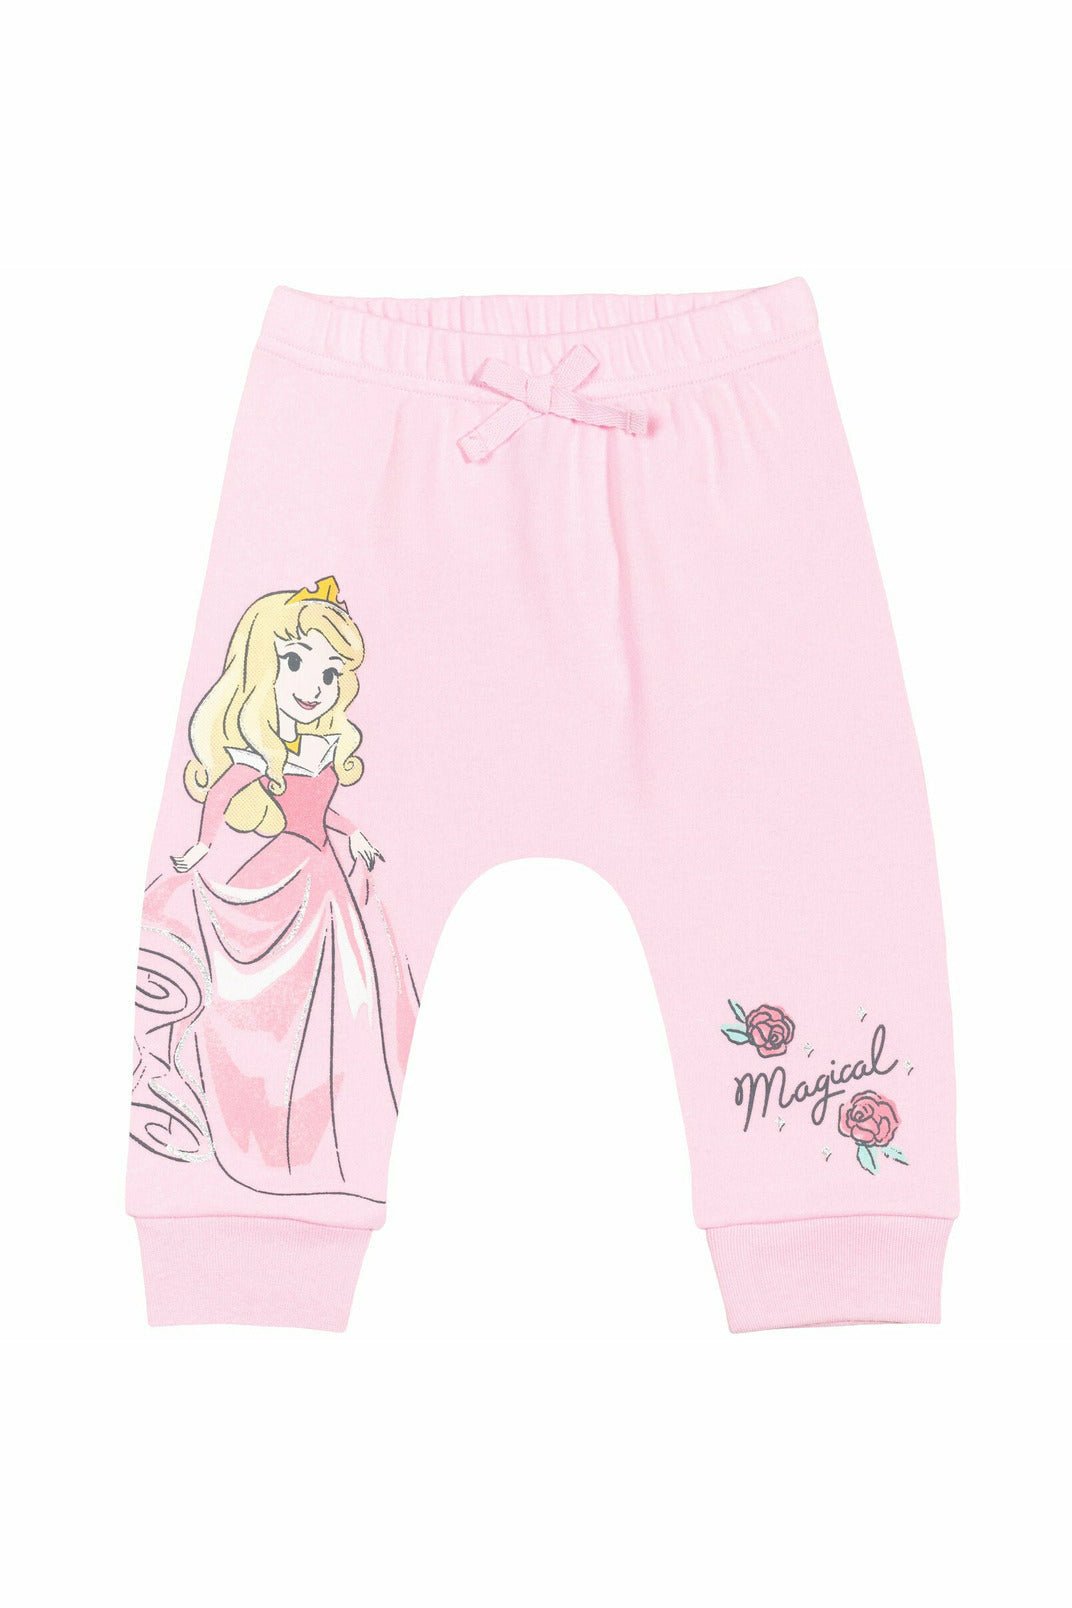 Disney Princesses 4 Pack Pants - imagikids